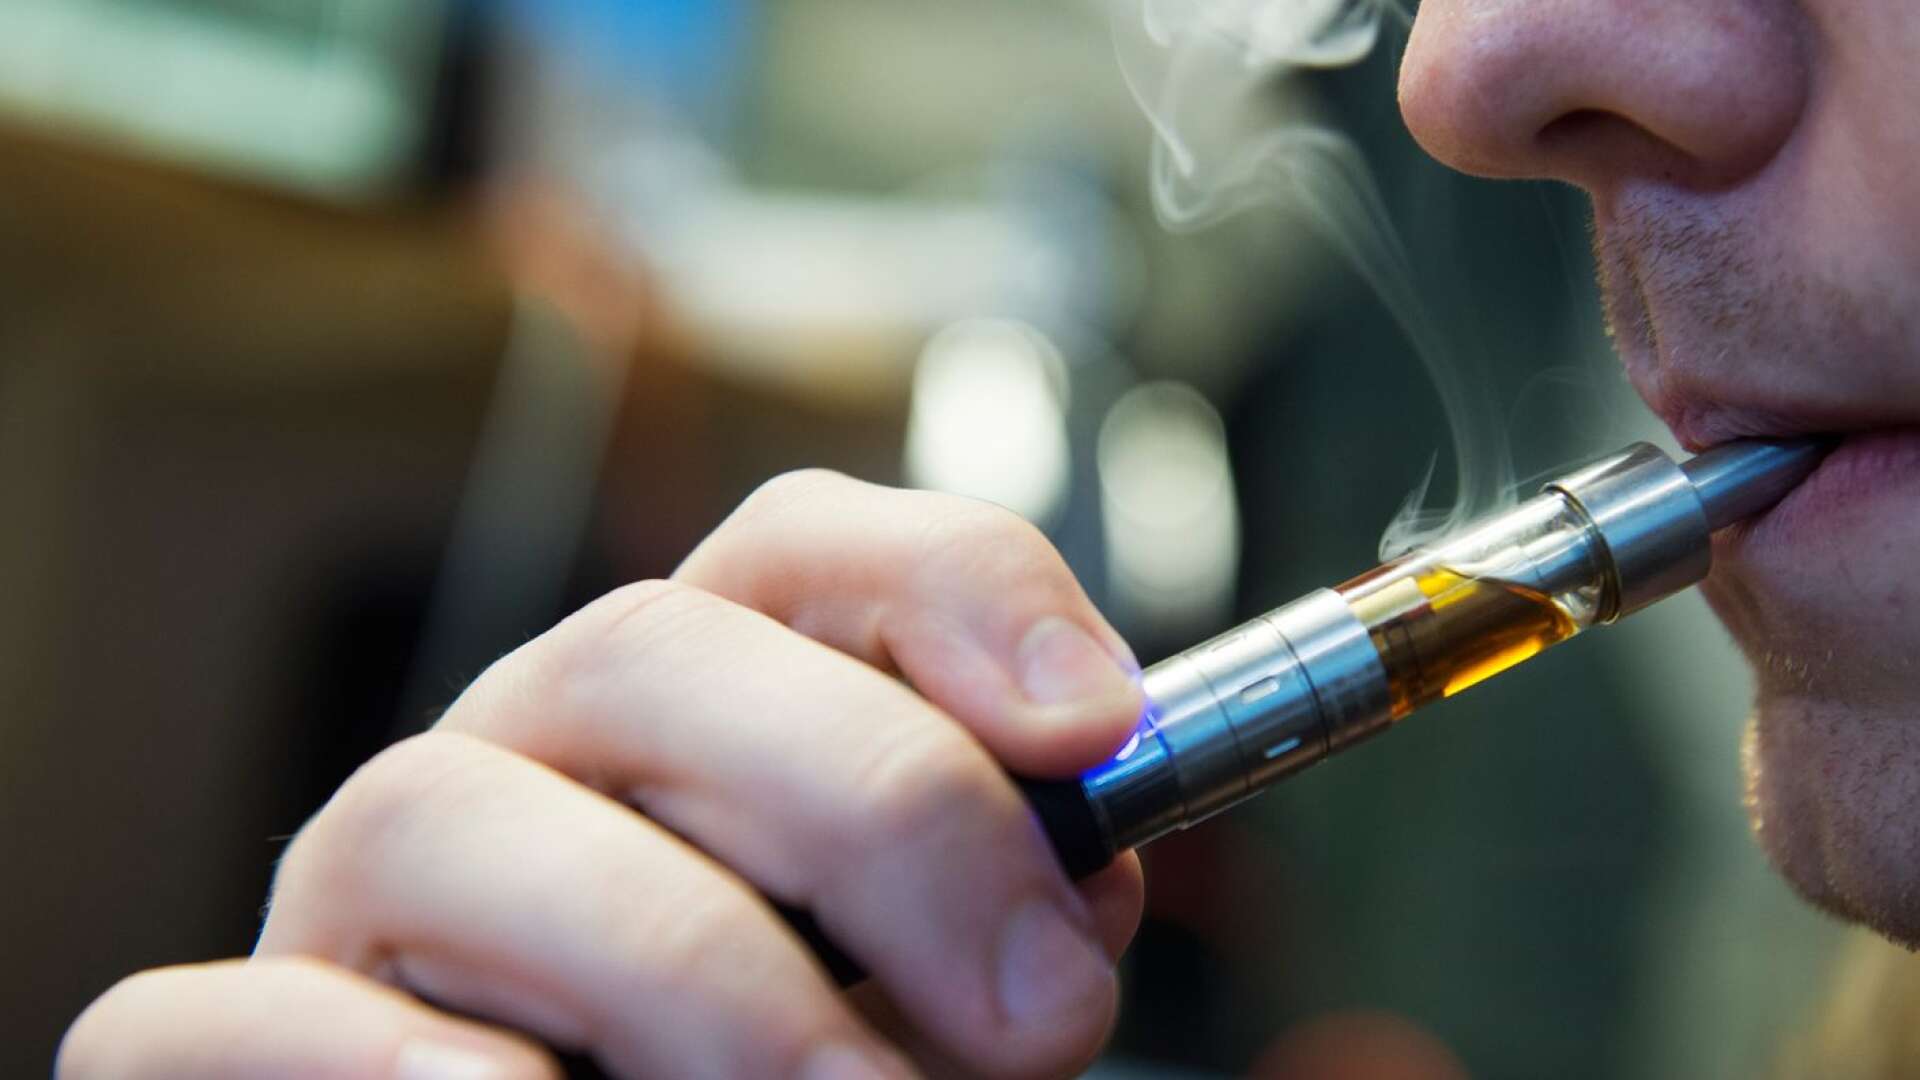 E-cigaretter blir allt vanligare. Undersökningen visar att andelen användare har tredubblats sedan 2019, från 7 till 21 procent. I Hjo rör det sig om 18 procent.